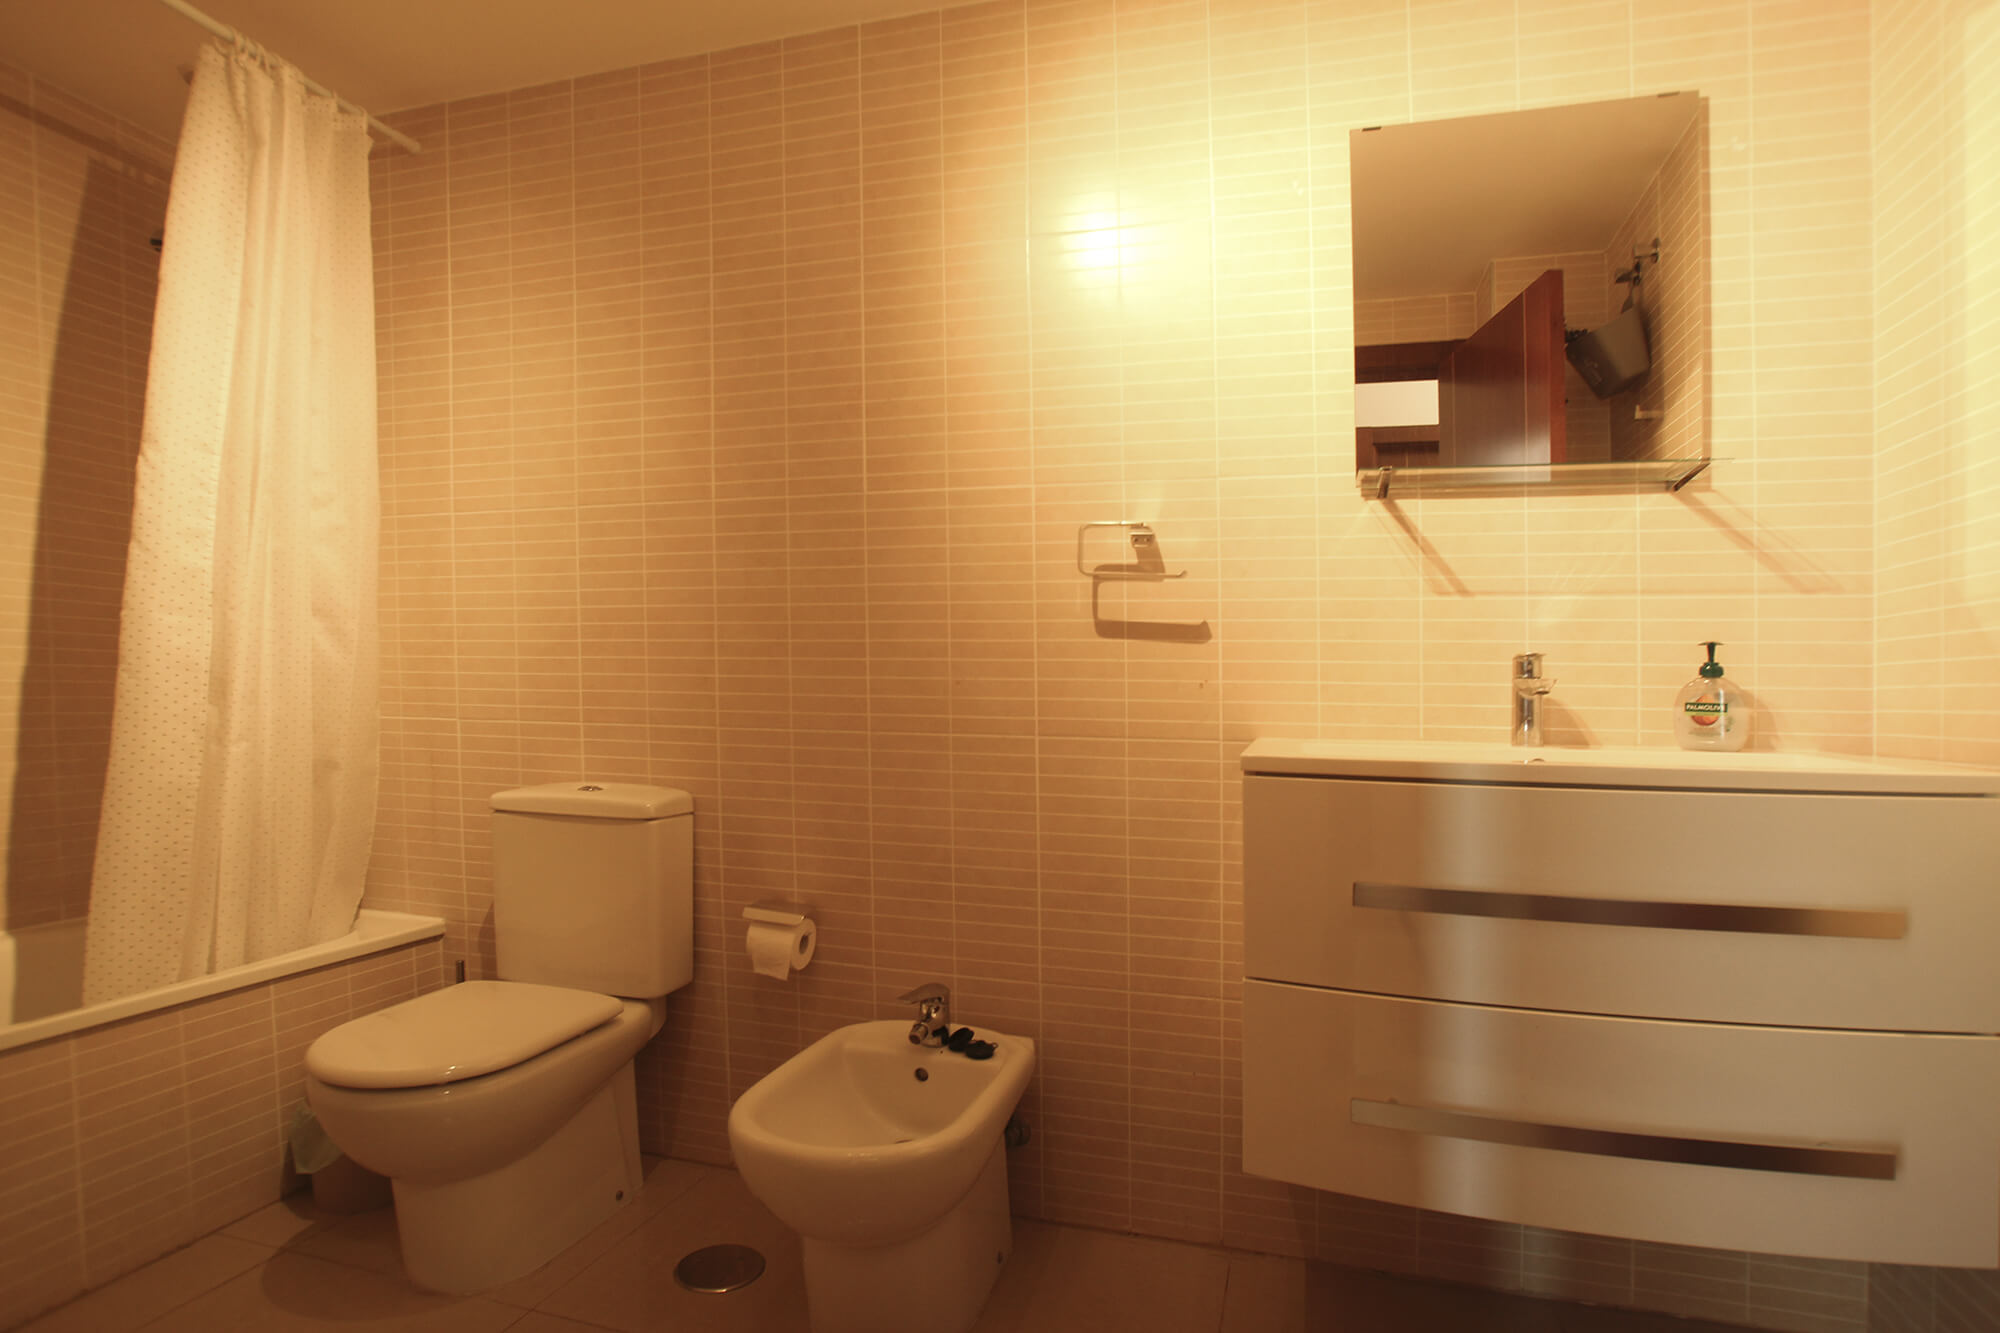 apartment for rent in Tenerife - bathroom